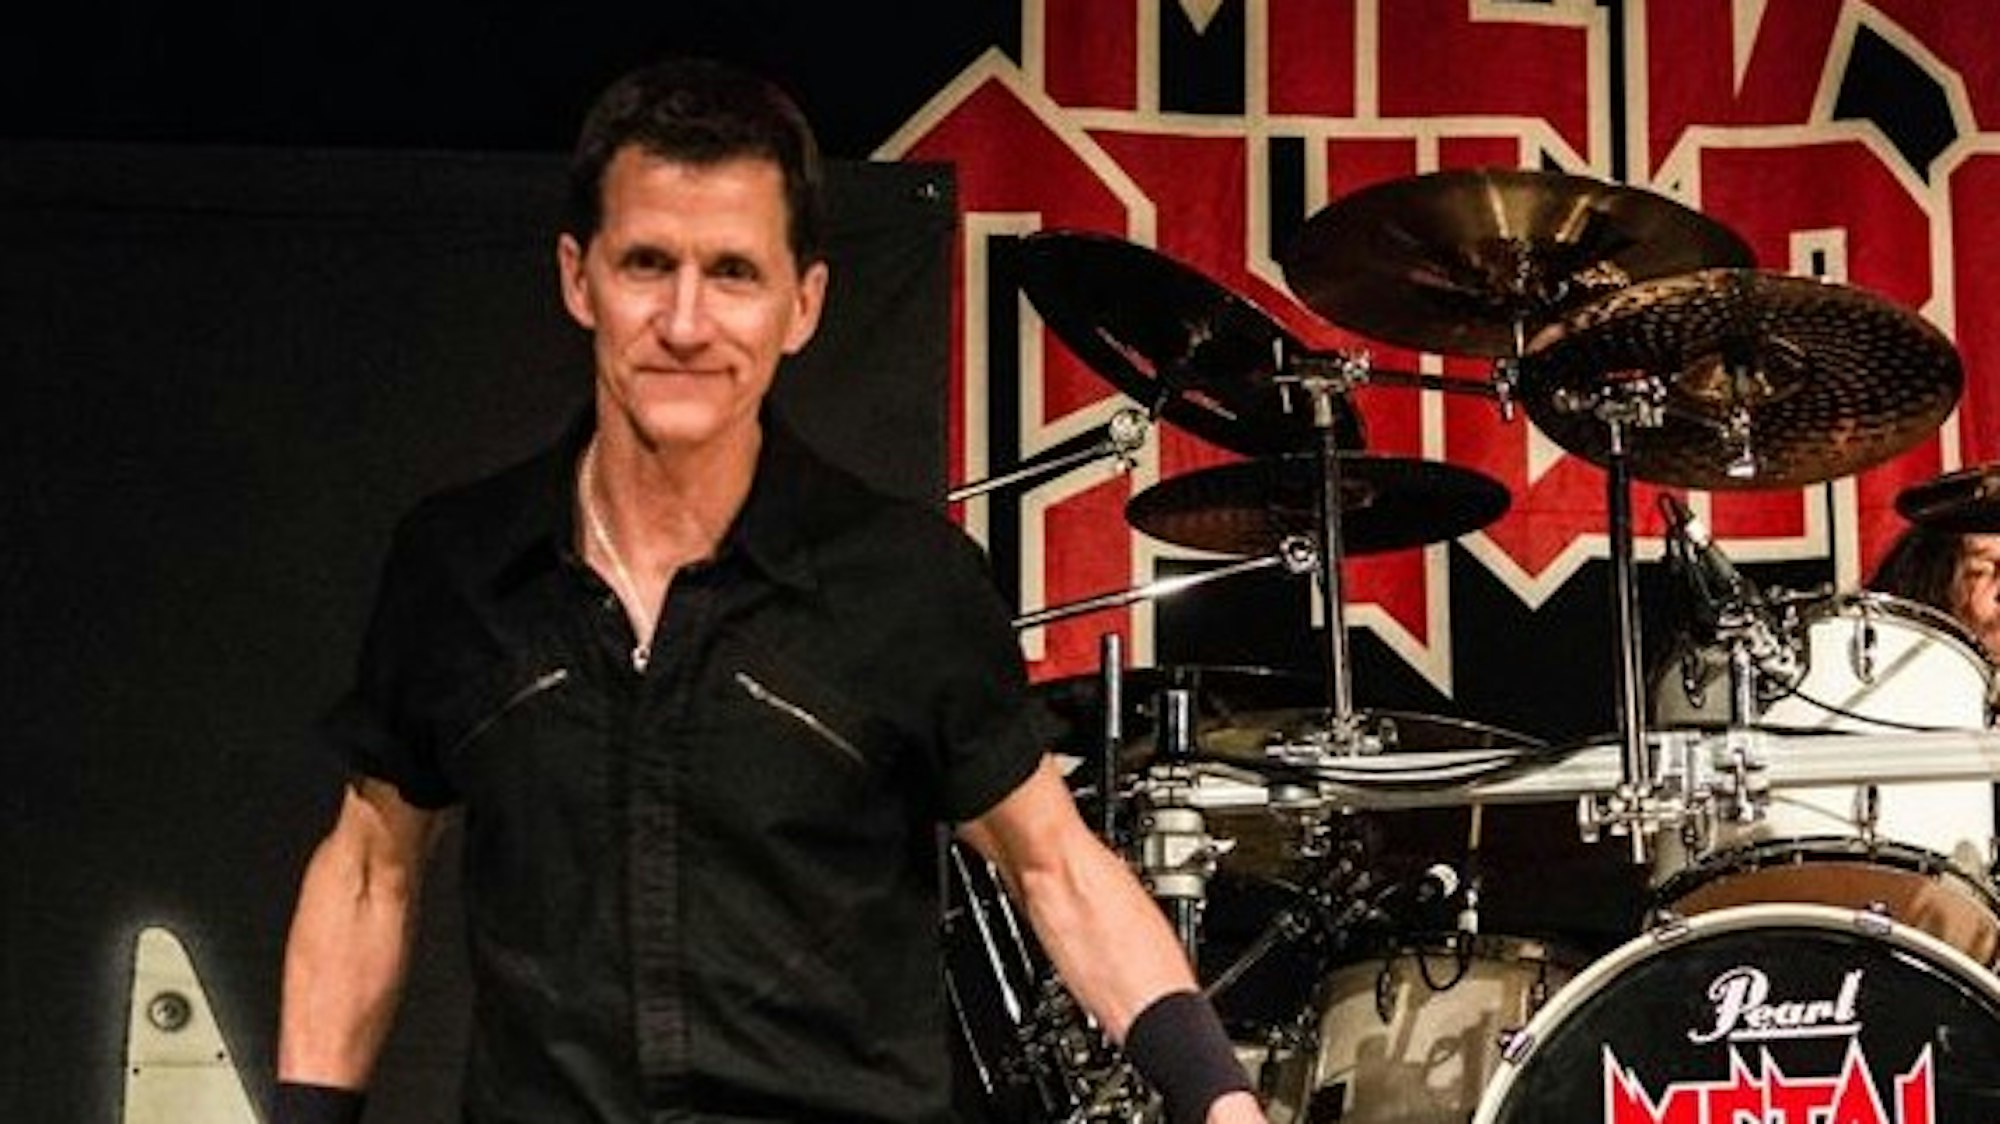 Mike Howe, Sänger der Band Metalchurch, ist mit 55 Jahren gestorben. Das Foto vom 19. Juni postete die Band auf Facebook